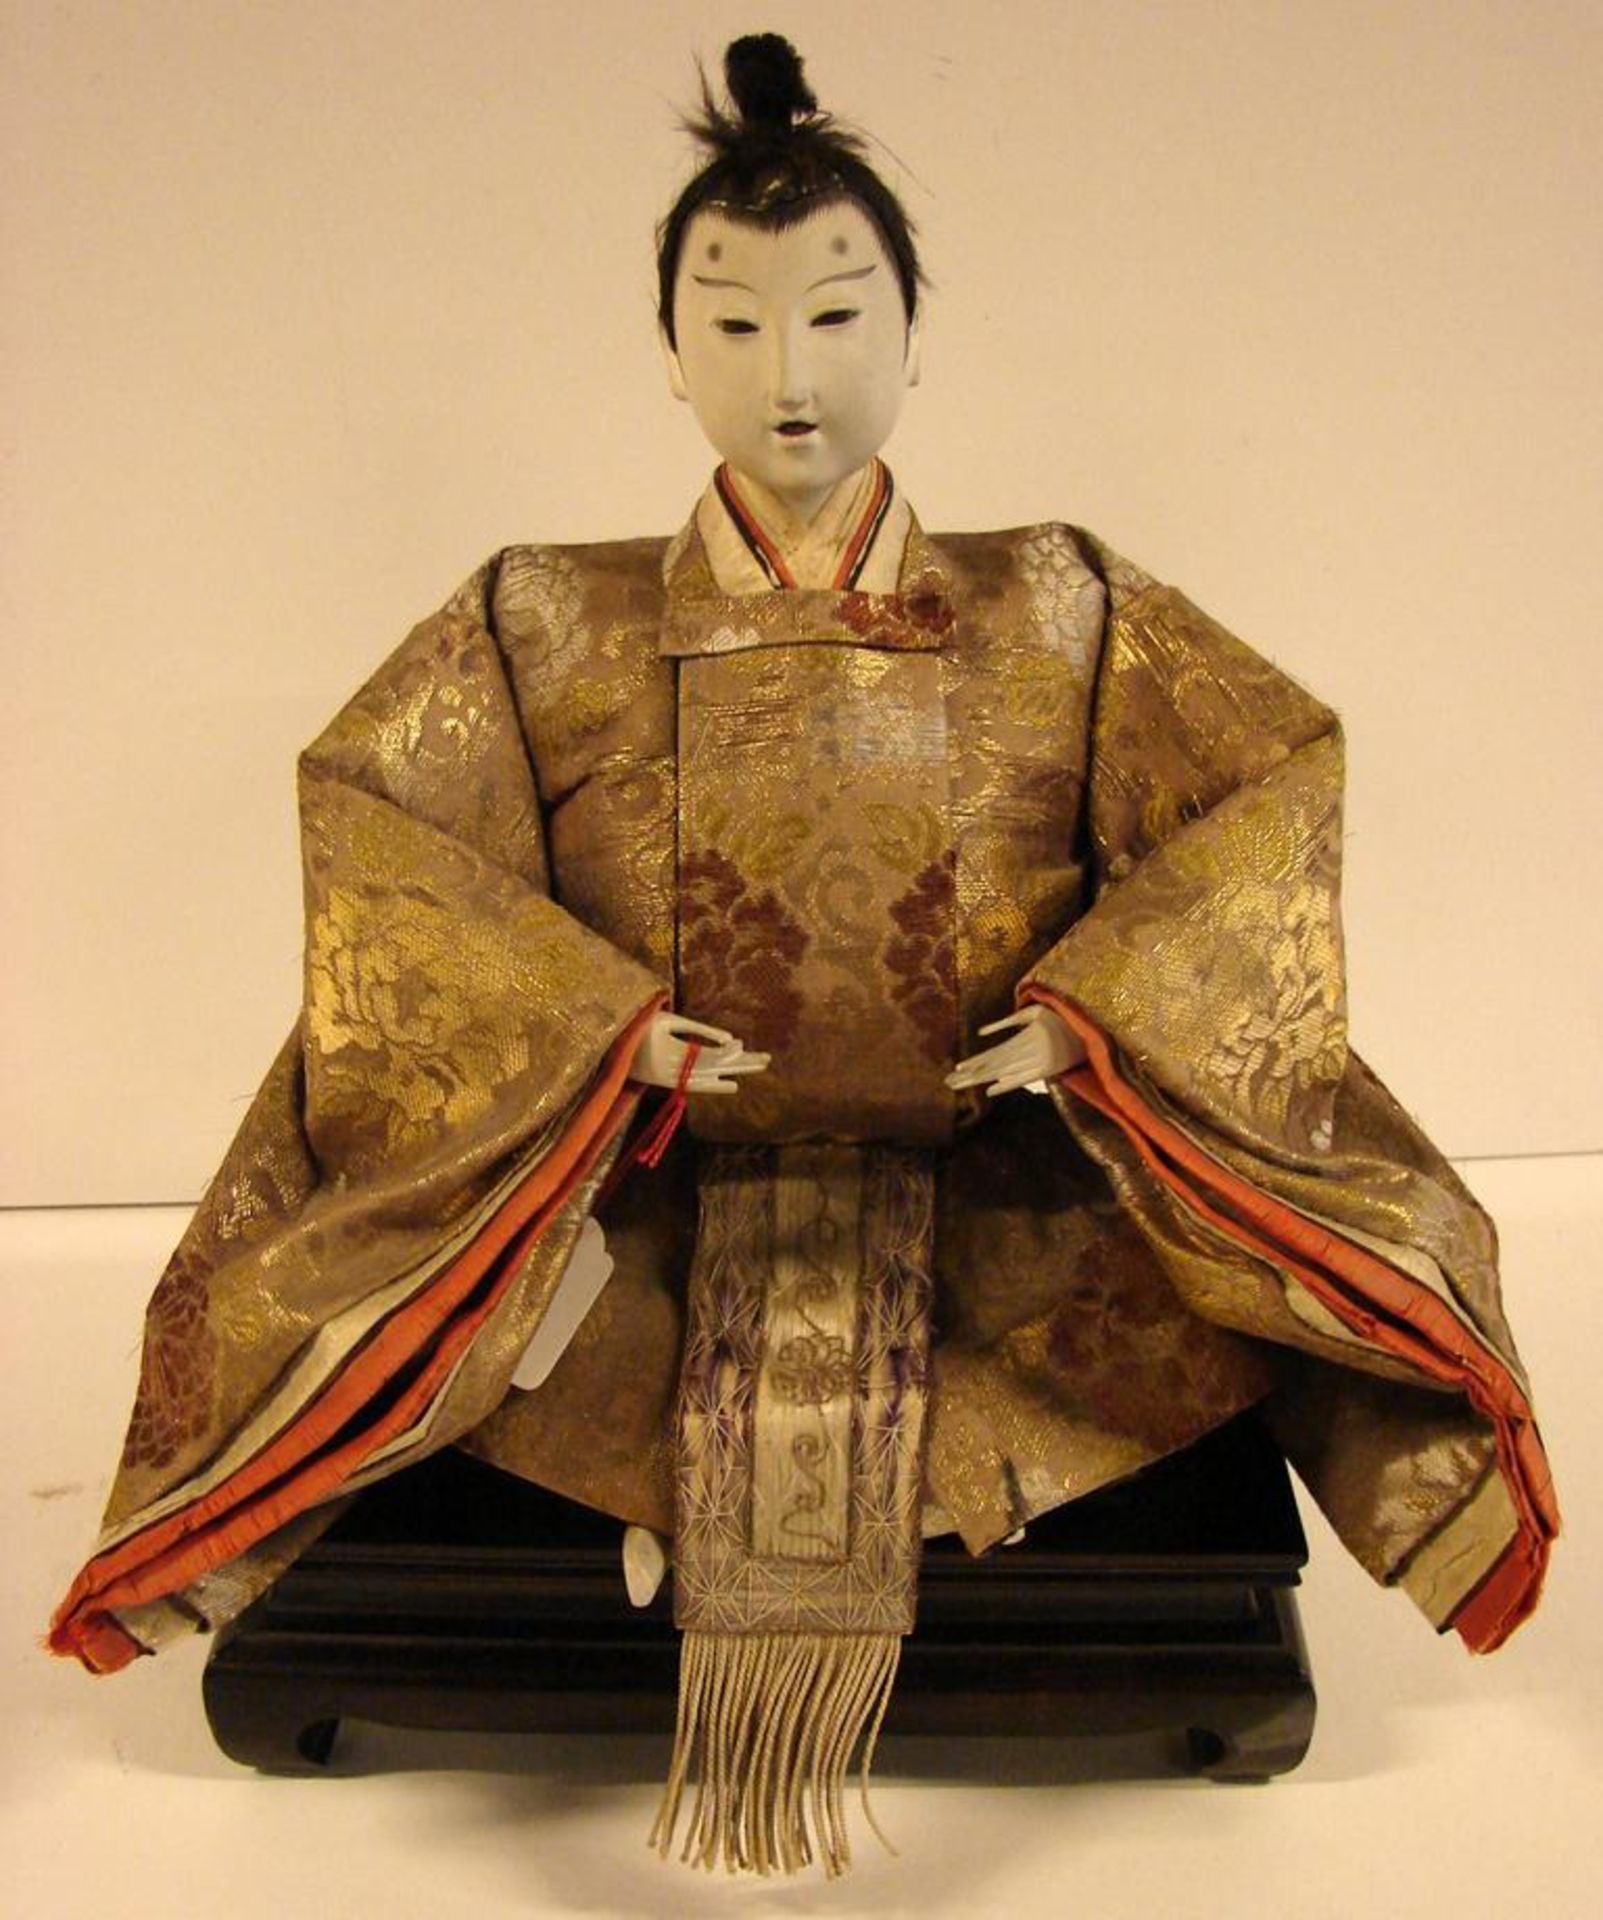 Hina Puppen,auf tatami-Sockel, Stoff, Papier,Glasaugen?, Japan, aufwendige Kleider, Höhe ca. 34 cm.